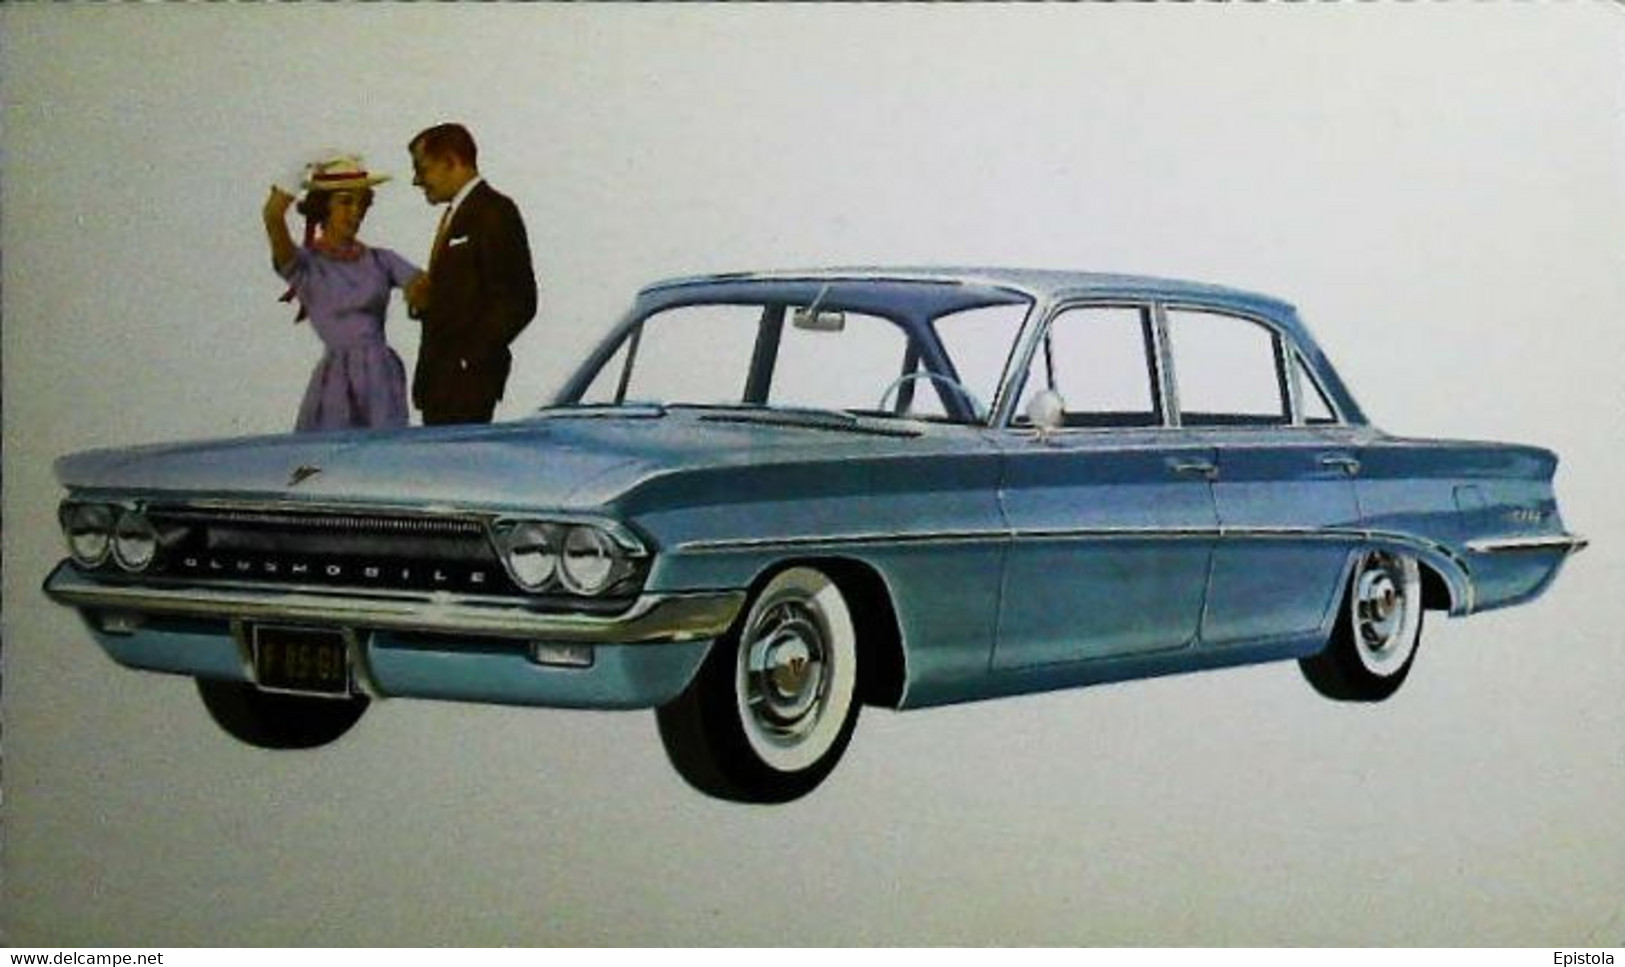 ► OLDSMOBILE F-85 De Luxe Sedan & Couple 1961 -  Garage Automobile Publicity (Litho. U.S.A.) Roadside - American Roadside